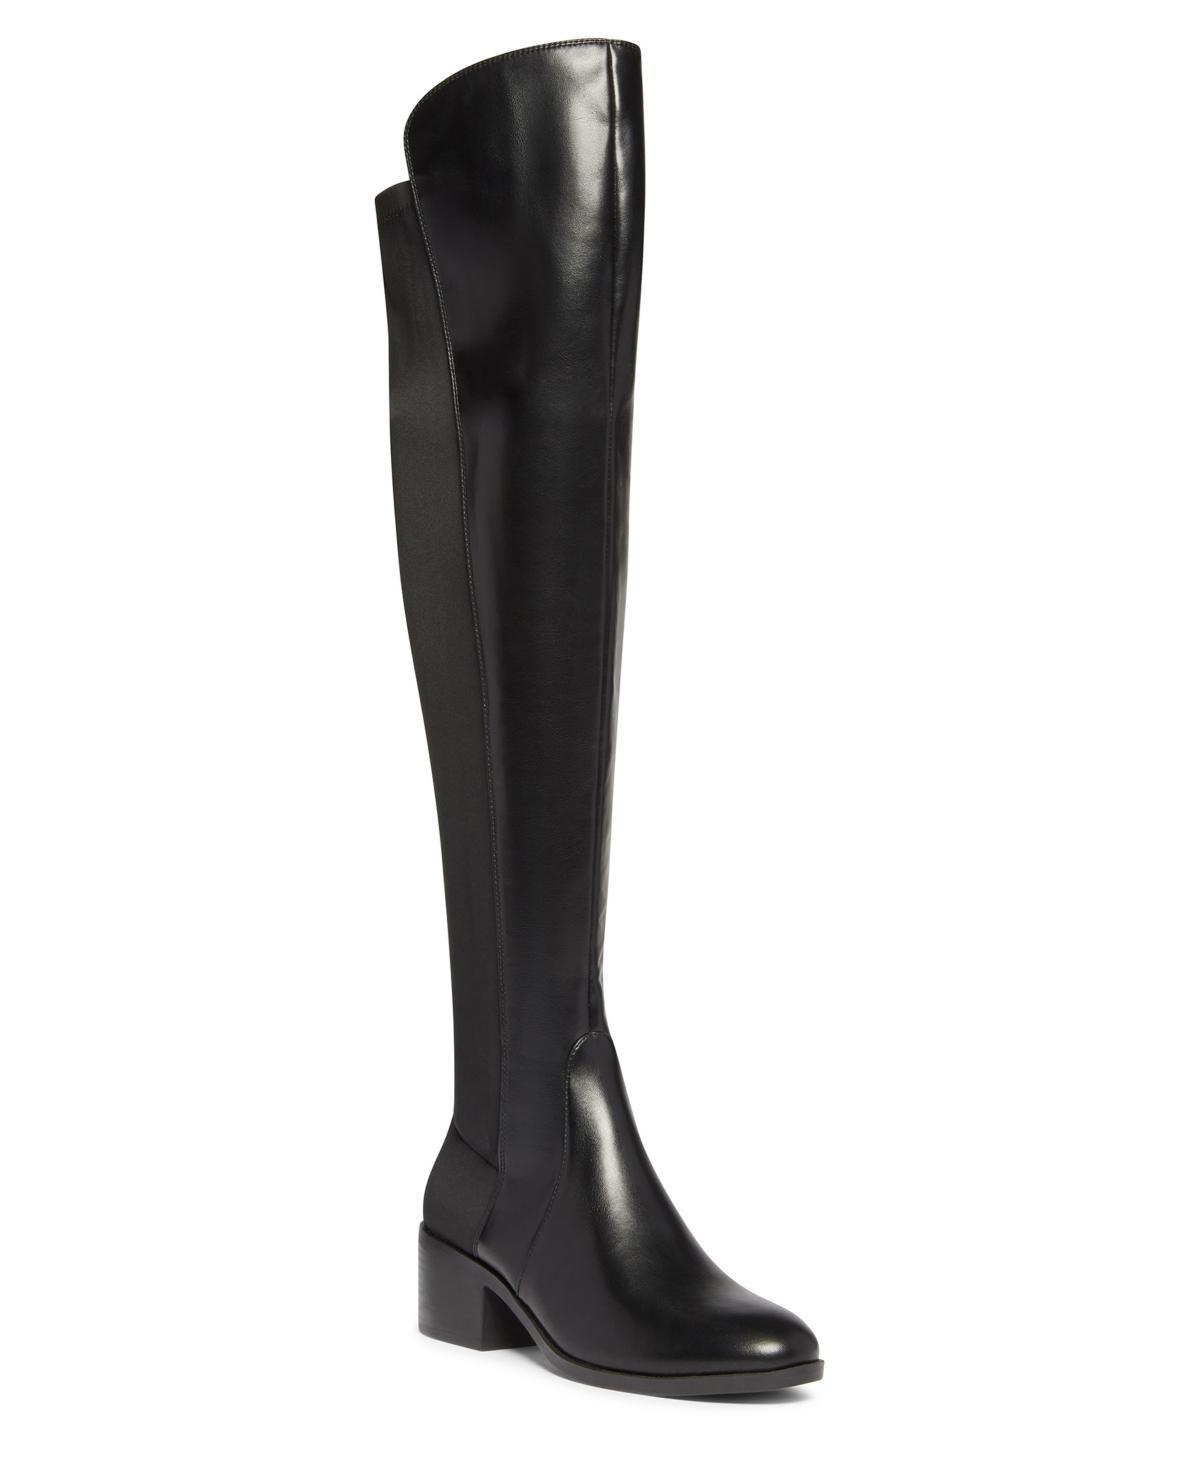 Anne Klein Adrenna (Dark ) Women's Boots Product Image